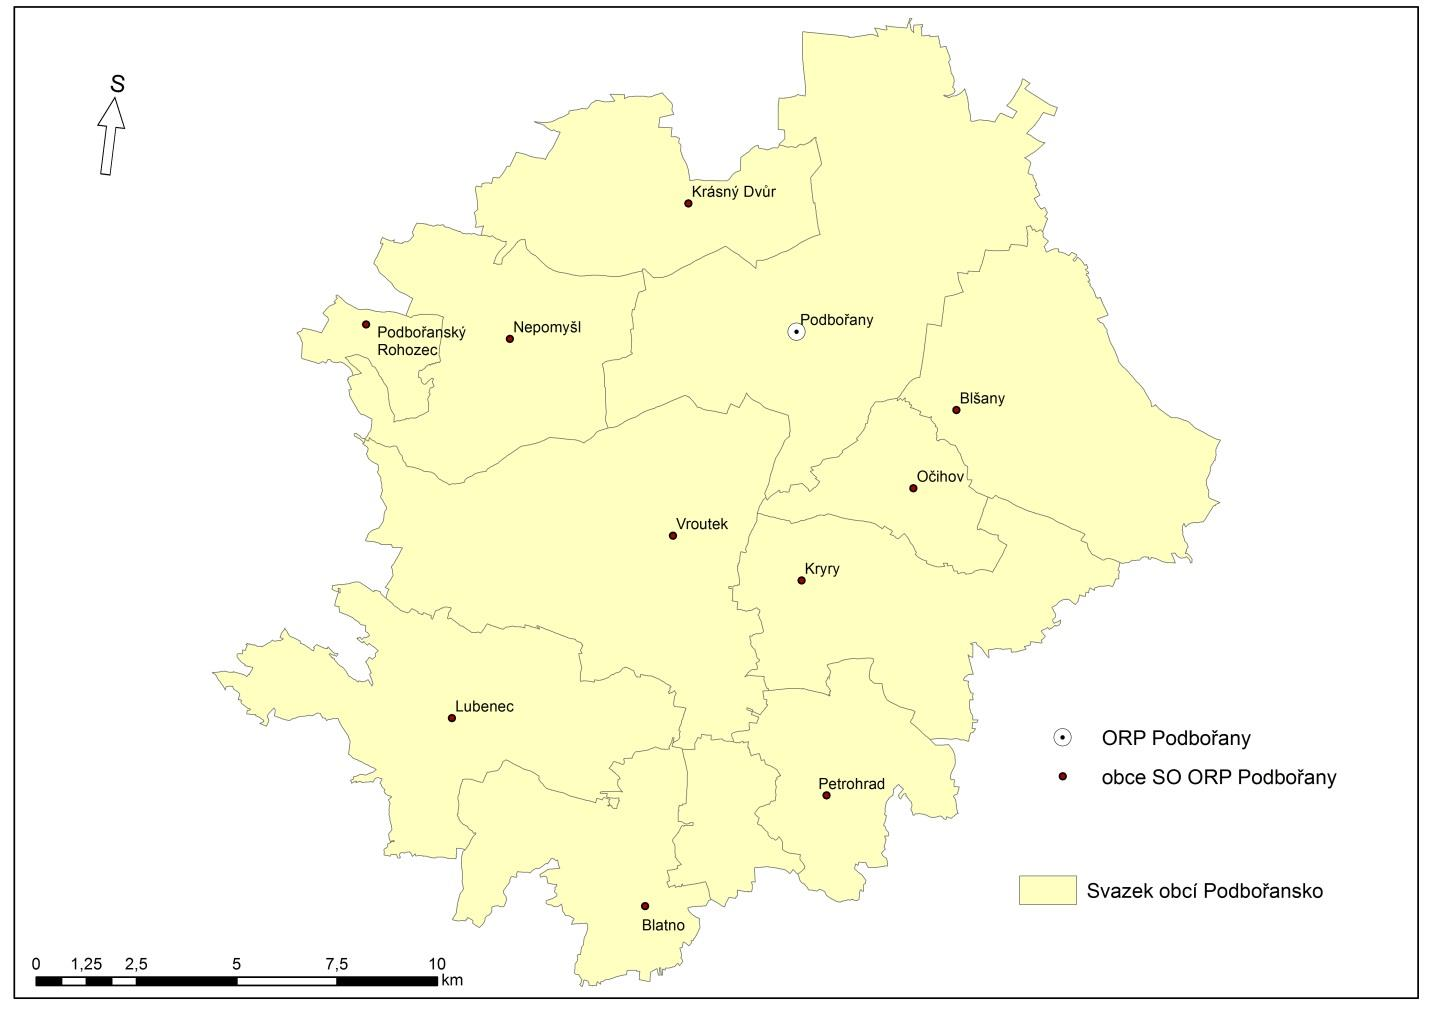 2 Souhrnná zpráva za všechny DSO v území Ve správním obvodu ORP Podbořany působí 1 dobrovolný svazek obcí (Svazek obcí